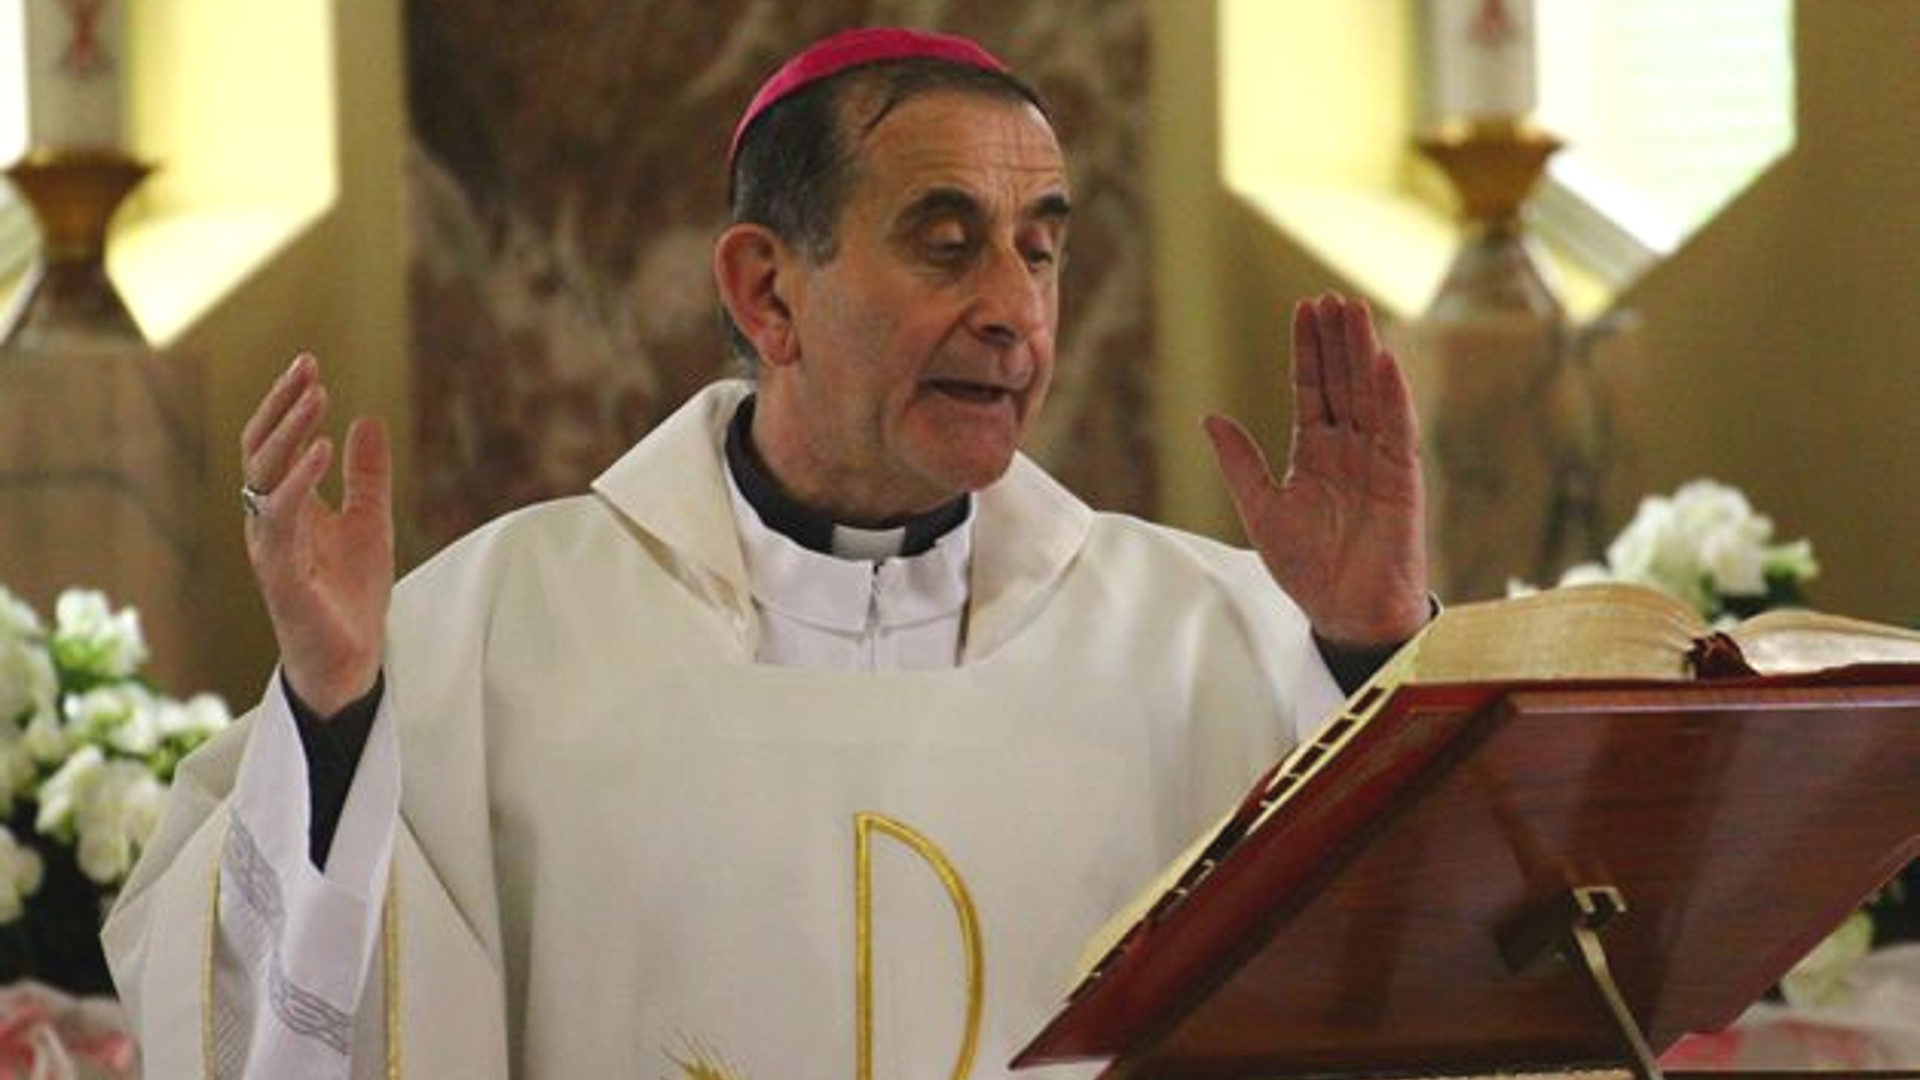 L'arcivescovo Mario Delpini